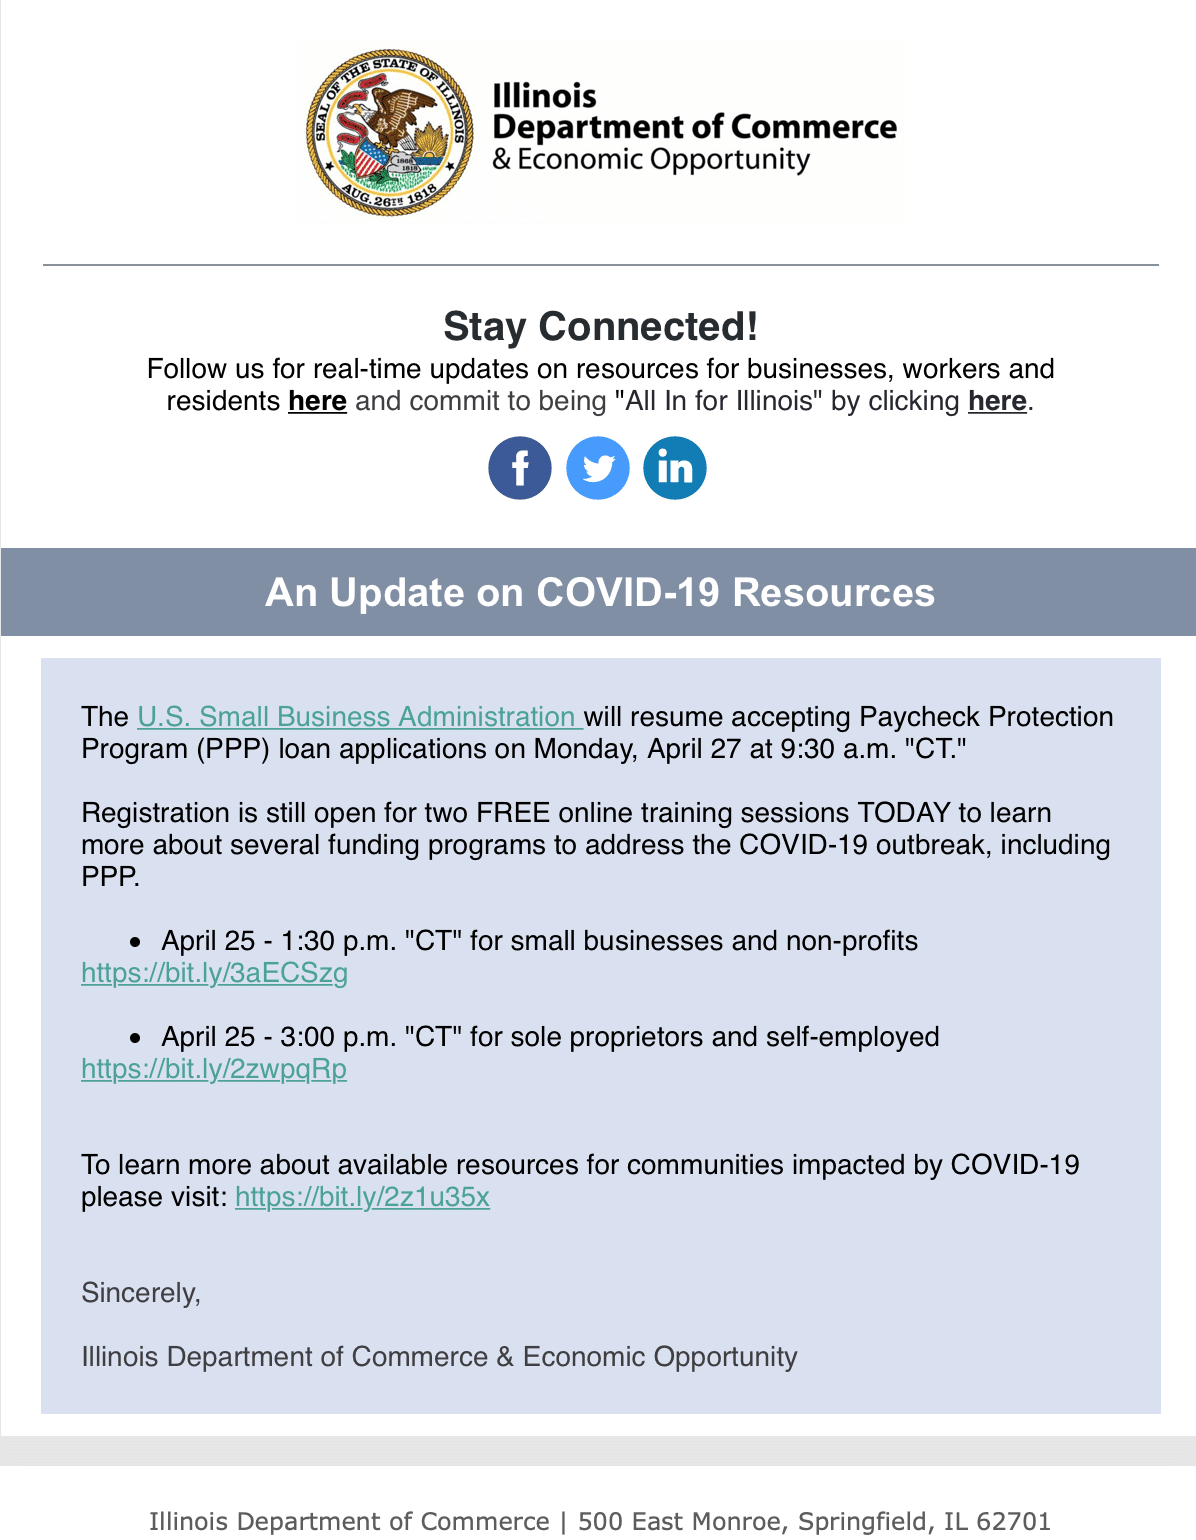 IL Dept of Commerce & Economic Development COVID-19 Update 4-25-20